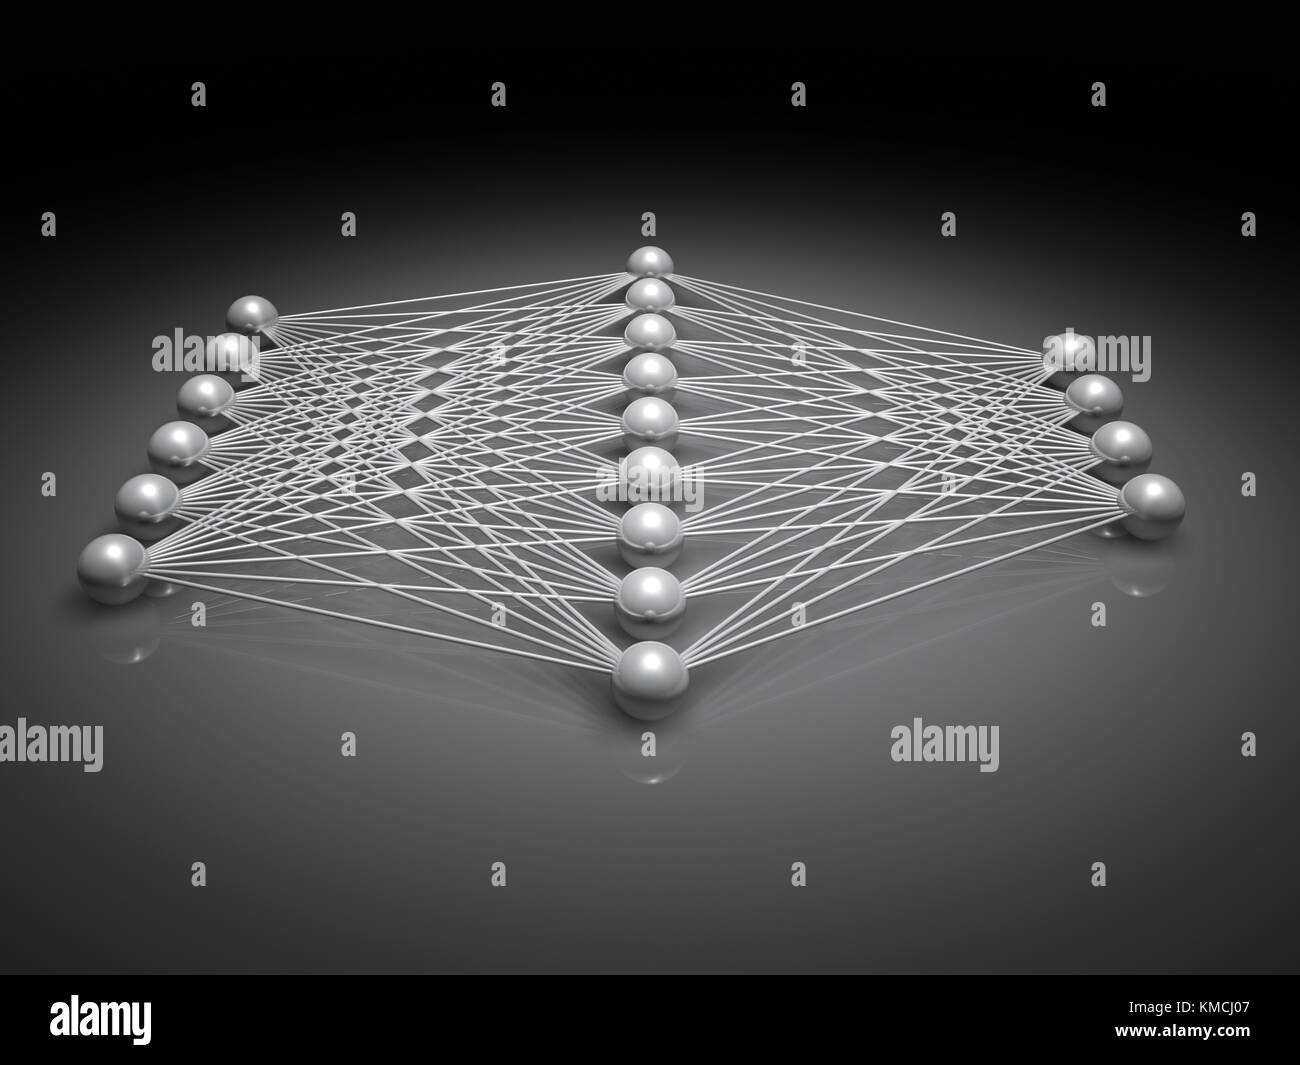 Künstliche flachen neuronales Netzwerk Struktur, Seitenansicht, Abbildung mit Schaltplan metallische Modell, 3D-Rendering Stockfoto